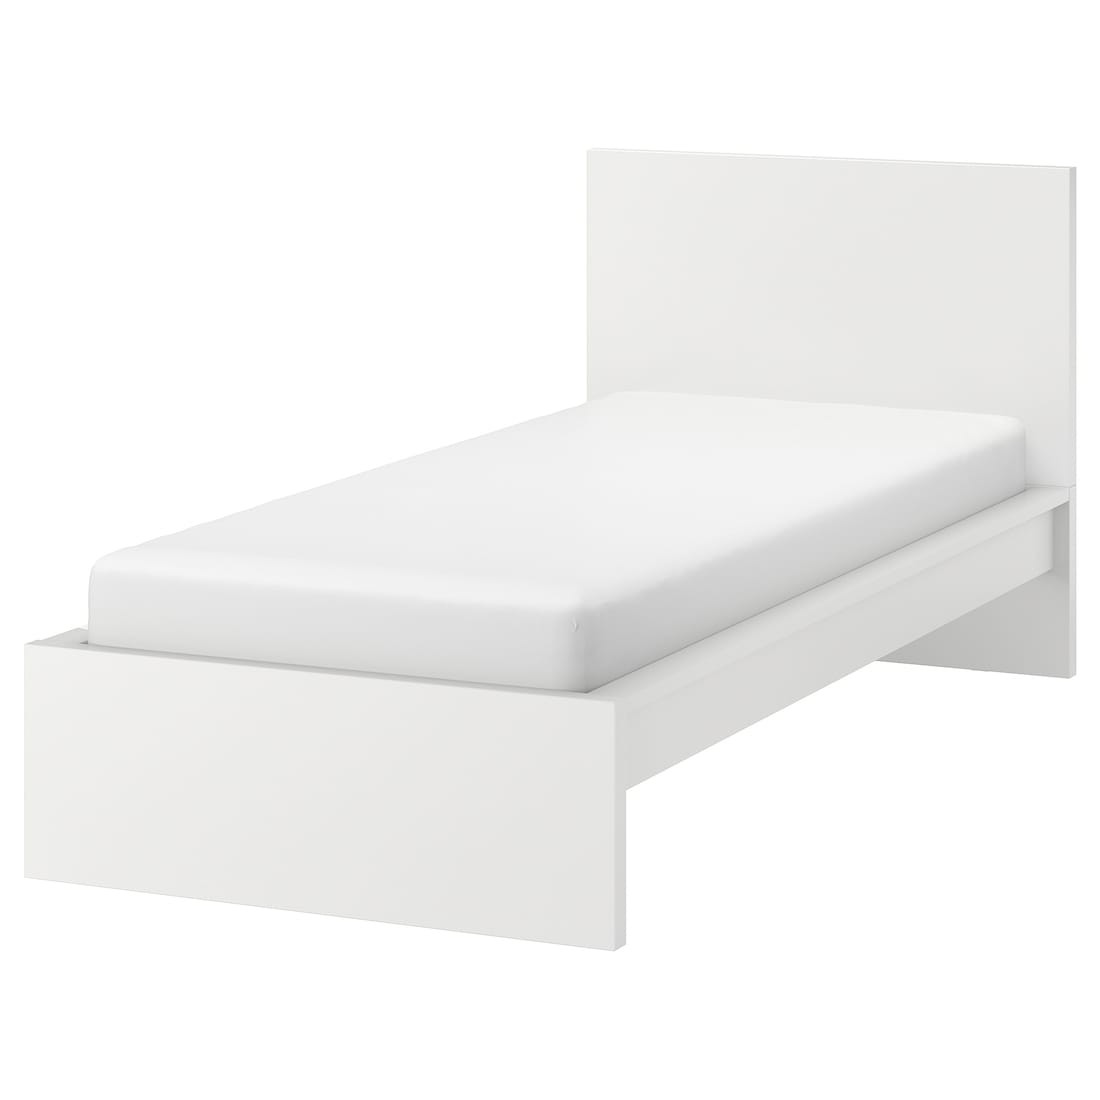 MALM МАЛЬМ Кровать односпальная, высокий, белый / Линдбаден, 90x200 см